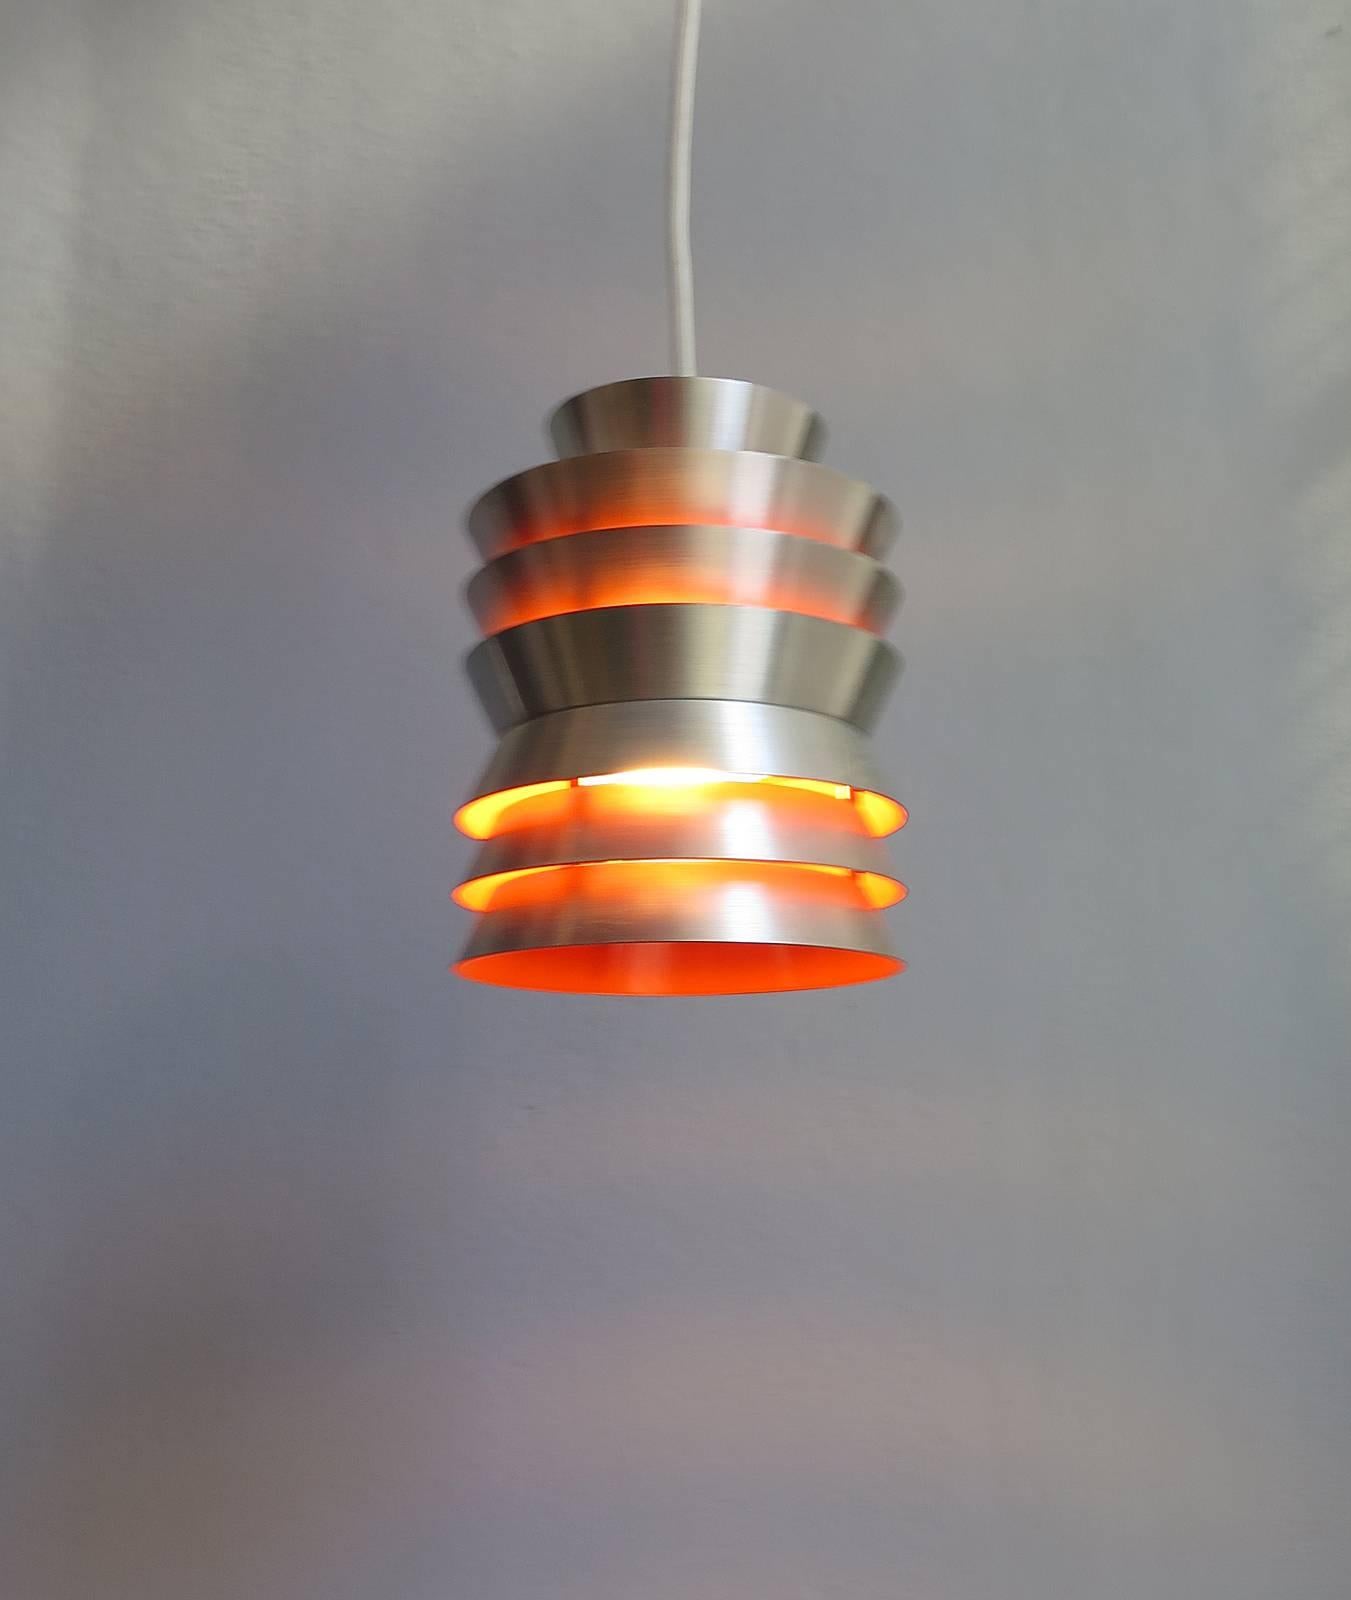 Danish aluminium and orange interior pendant lamp.